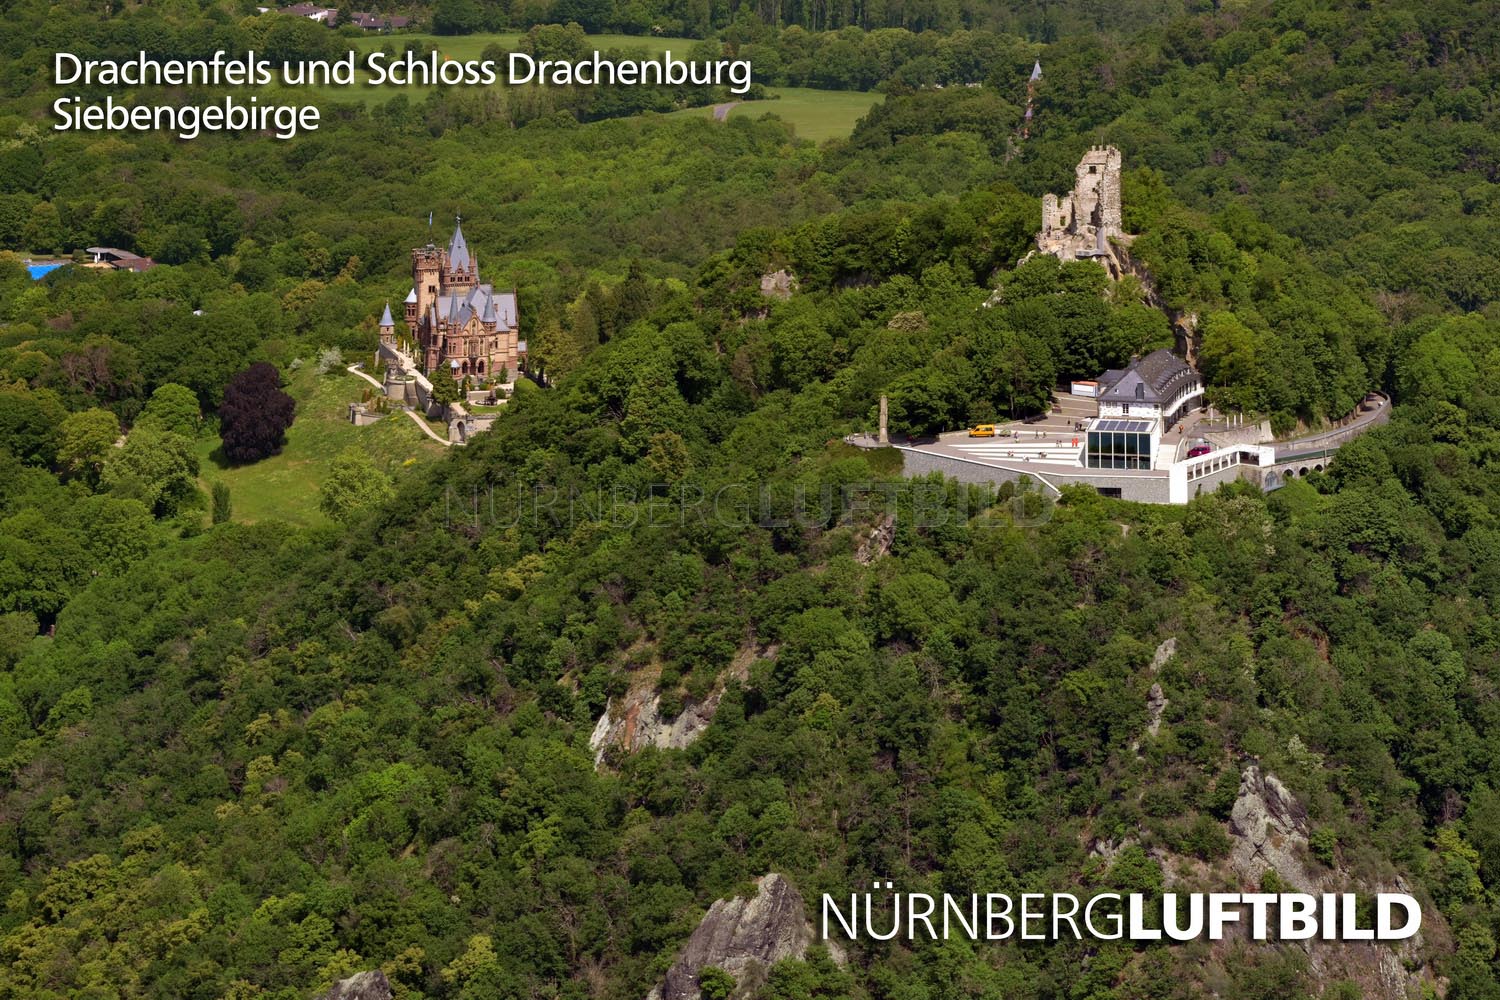 Drachenfels und Schloss Drachenburg, Siebengebirge